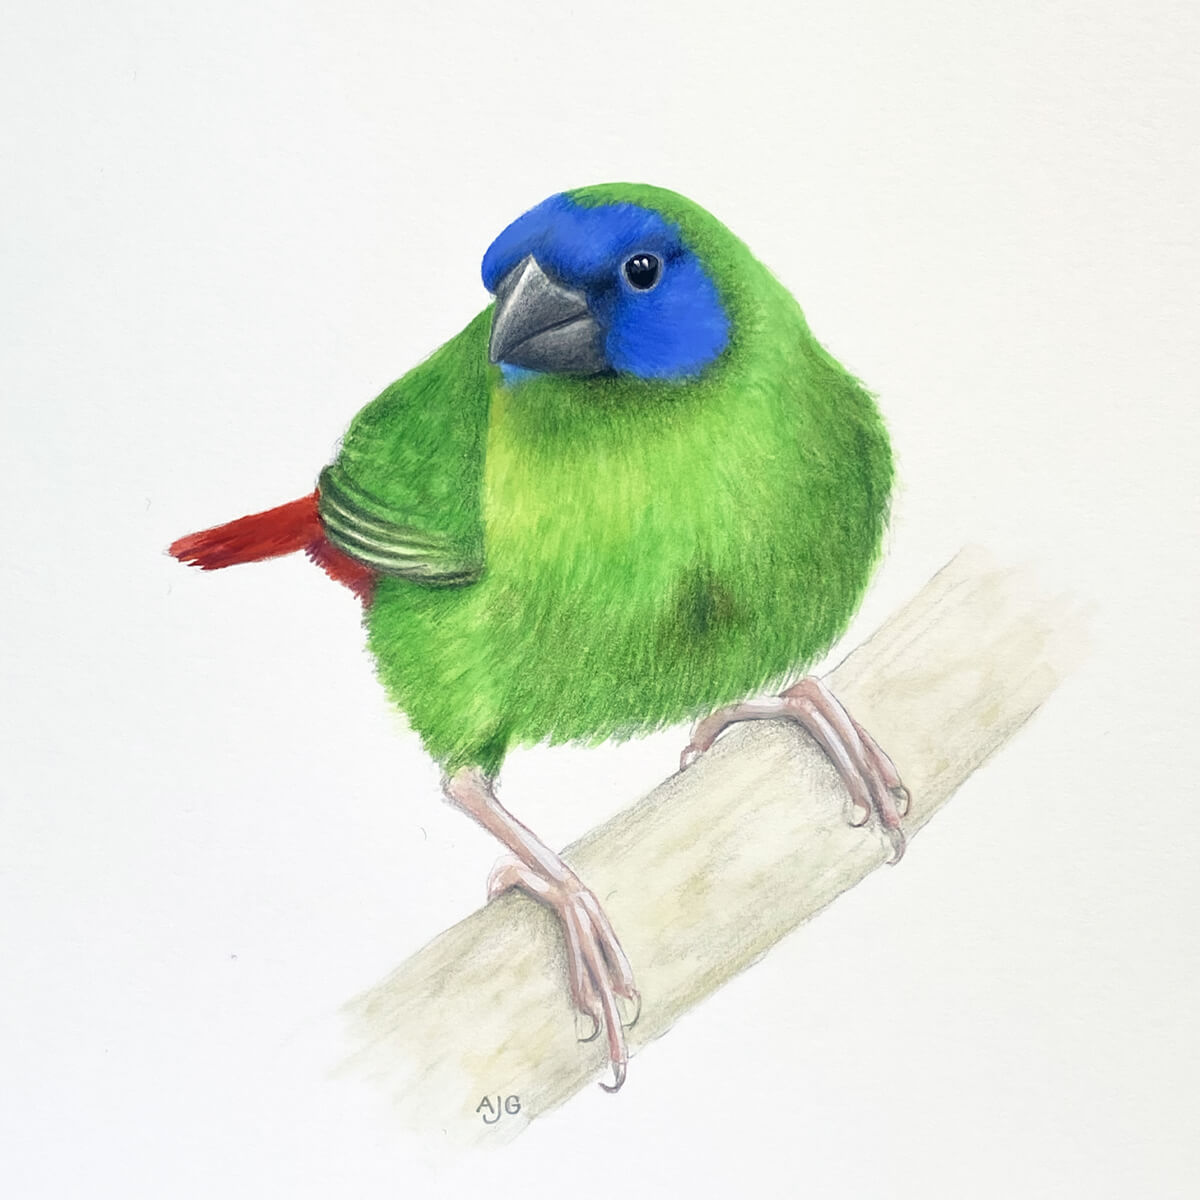 Original A4 gouache painting of a Blue-faced Parrot Finch by bird artist Amanda Gosse